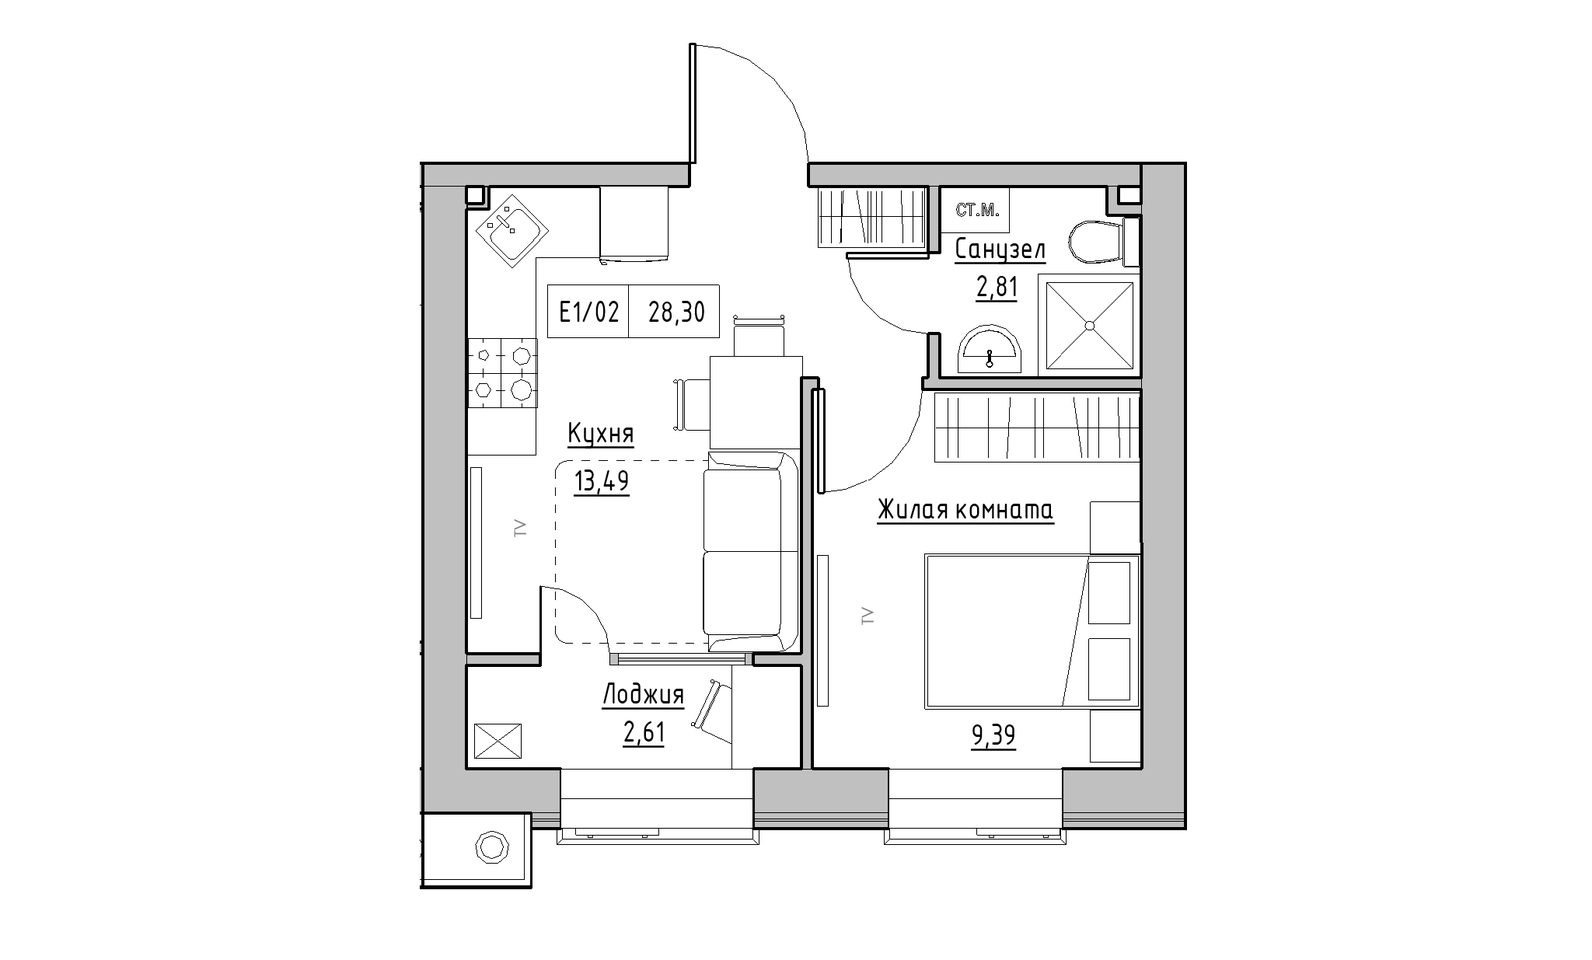 Планування 1-к квартира площею 28.3м2, KS-014-05/0001.